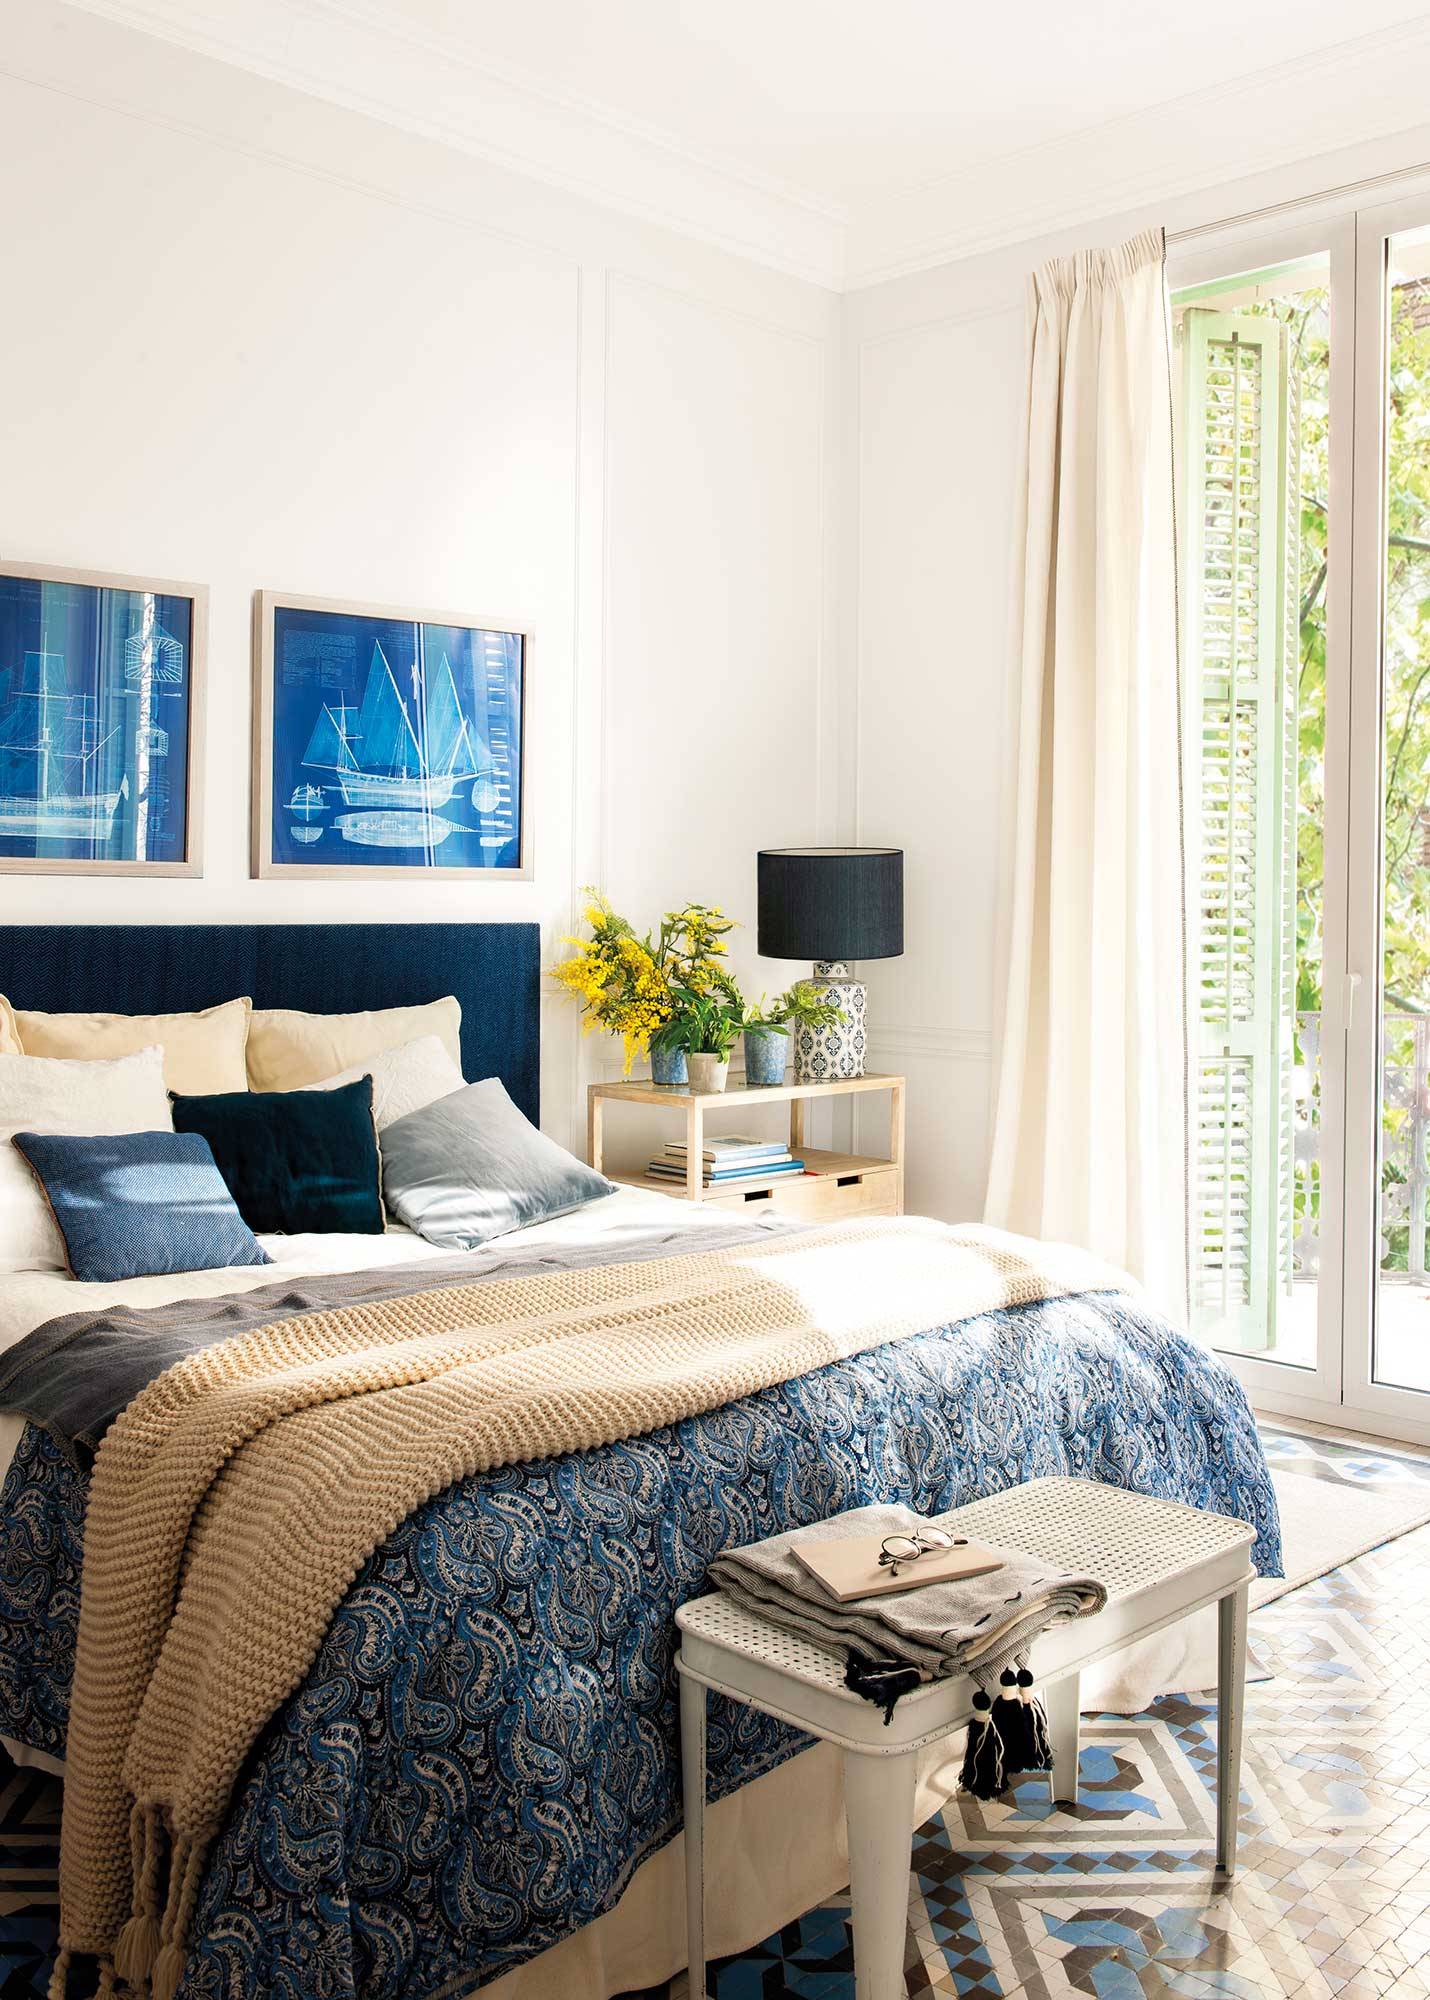 Dormitorio de piso regio con decoración en azul y blanco y dos cuadros azules_00521166